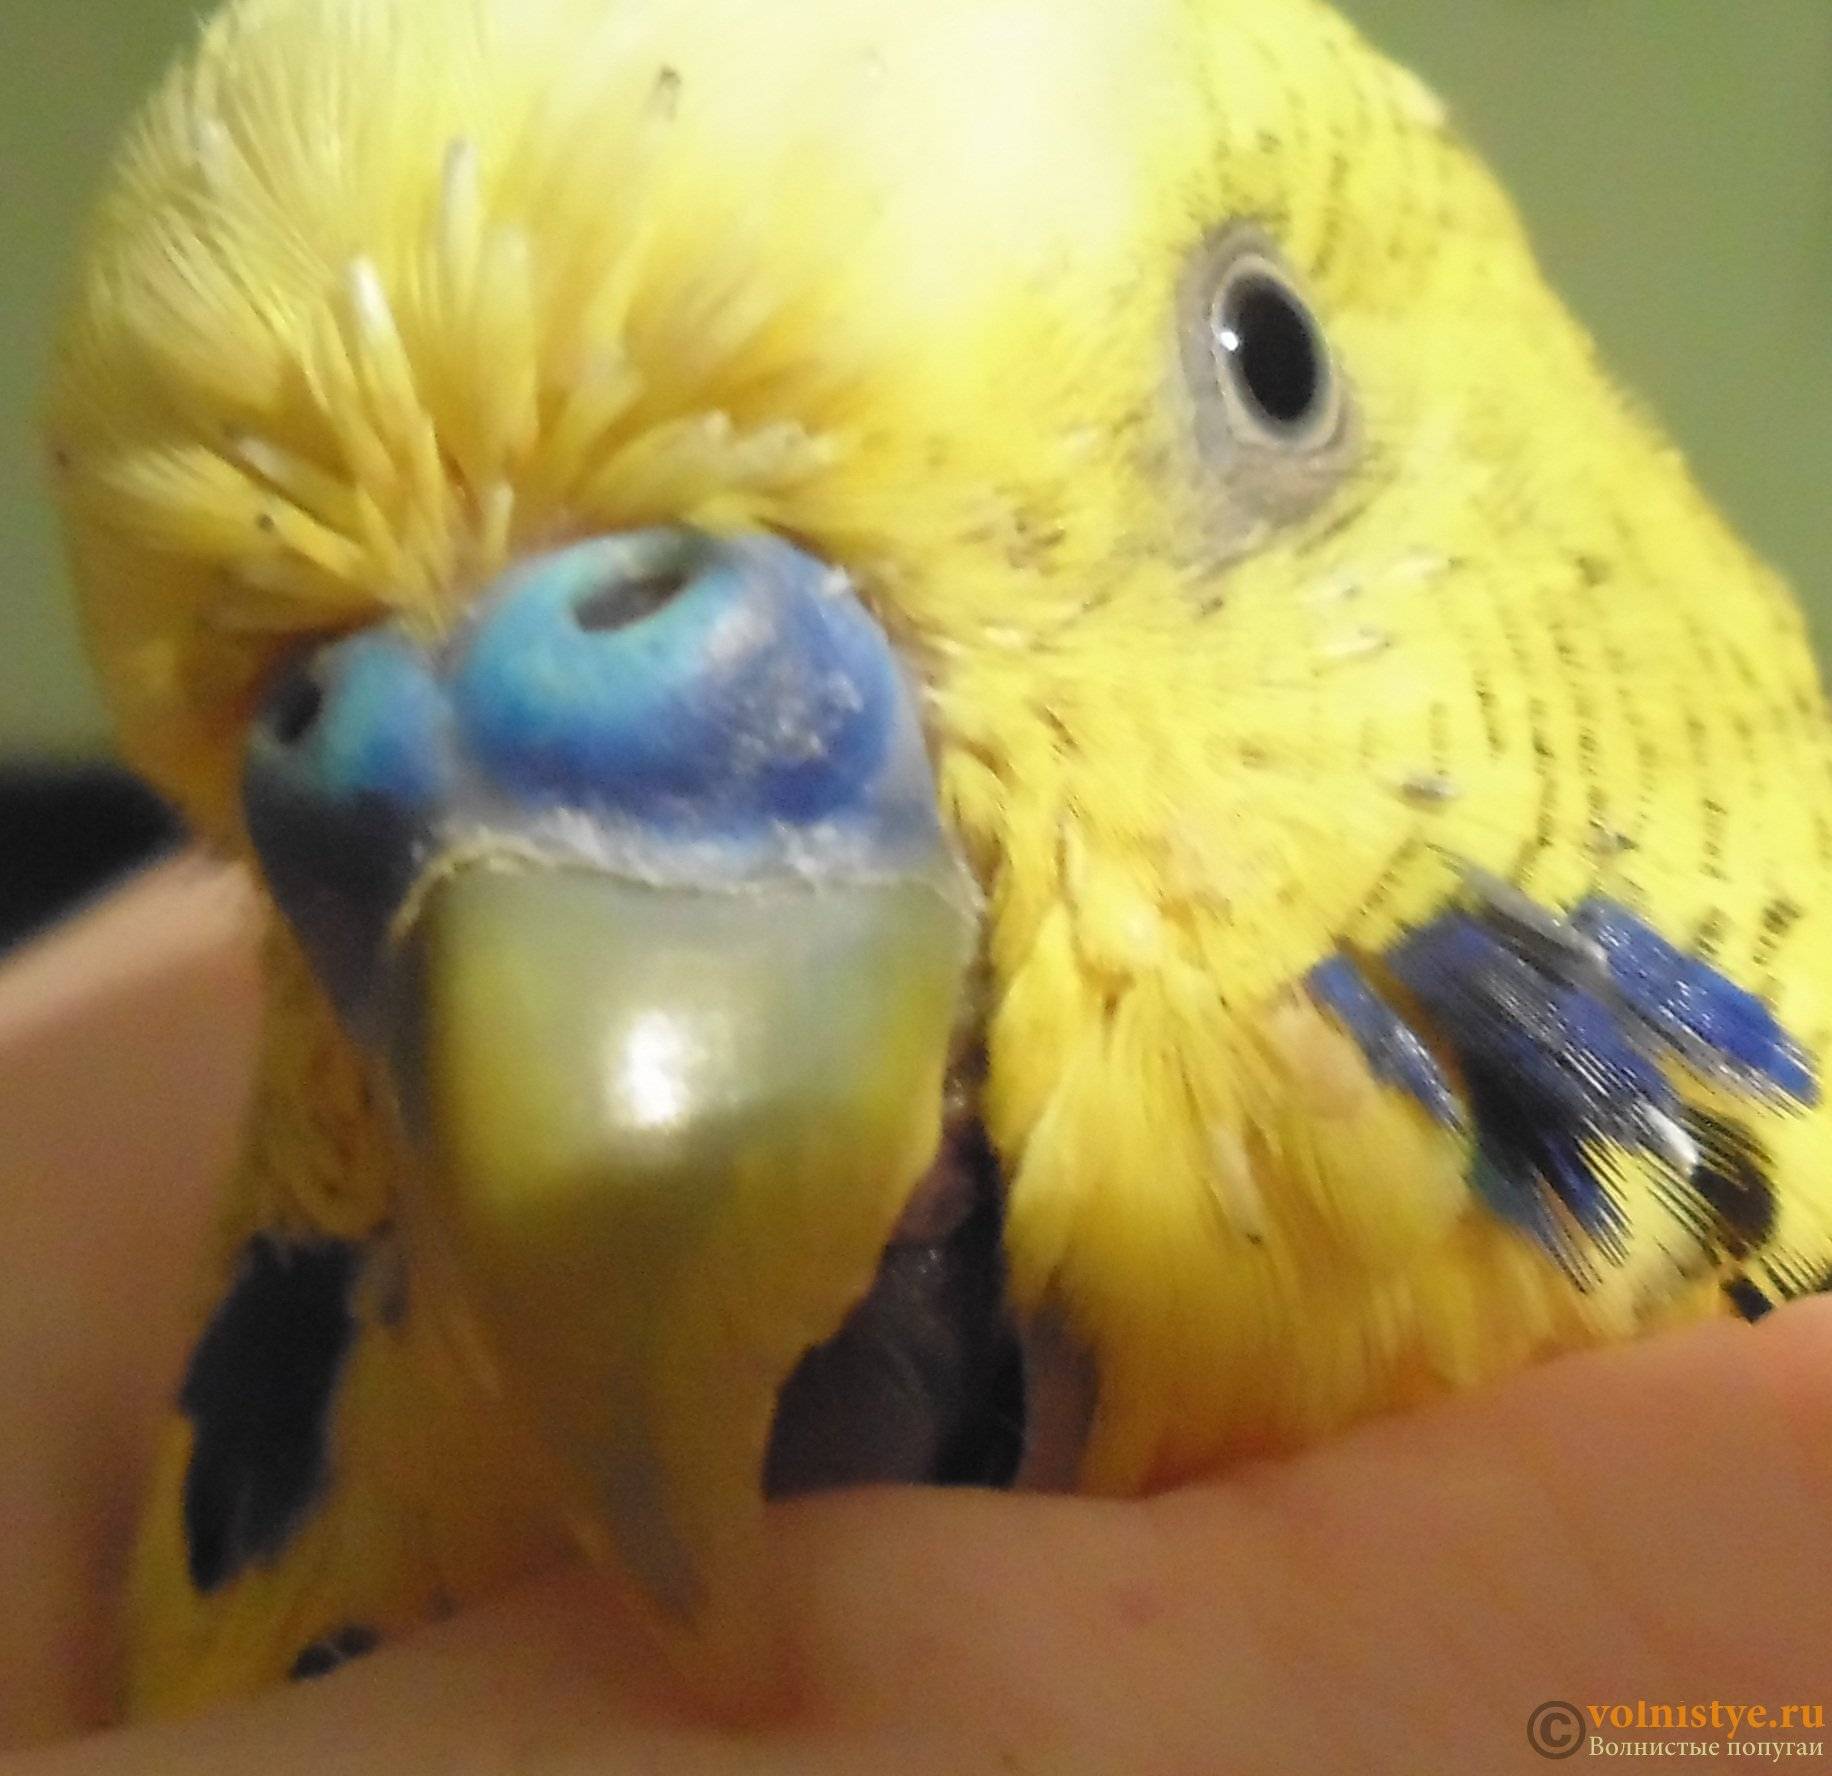 Что делать, если попугай чихает (волнистый, корелла): часто, с соплями, дёргает головой, выплёвывает зёрна